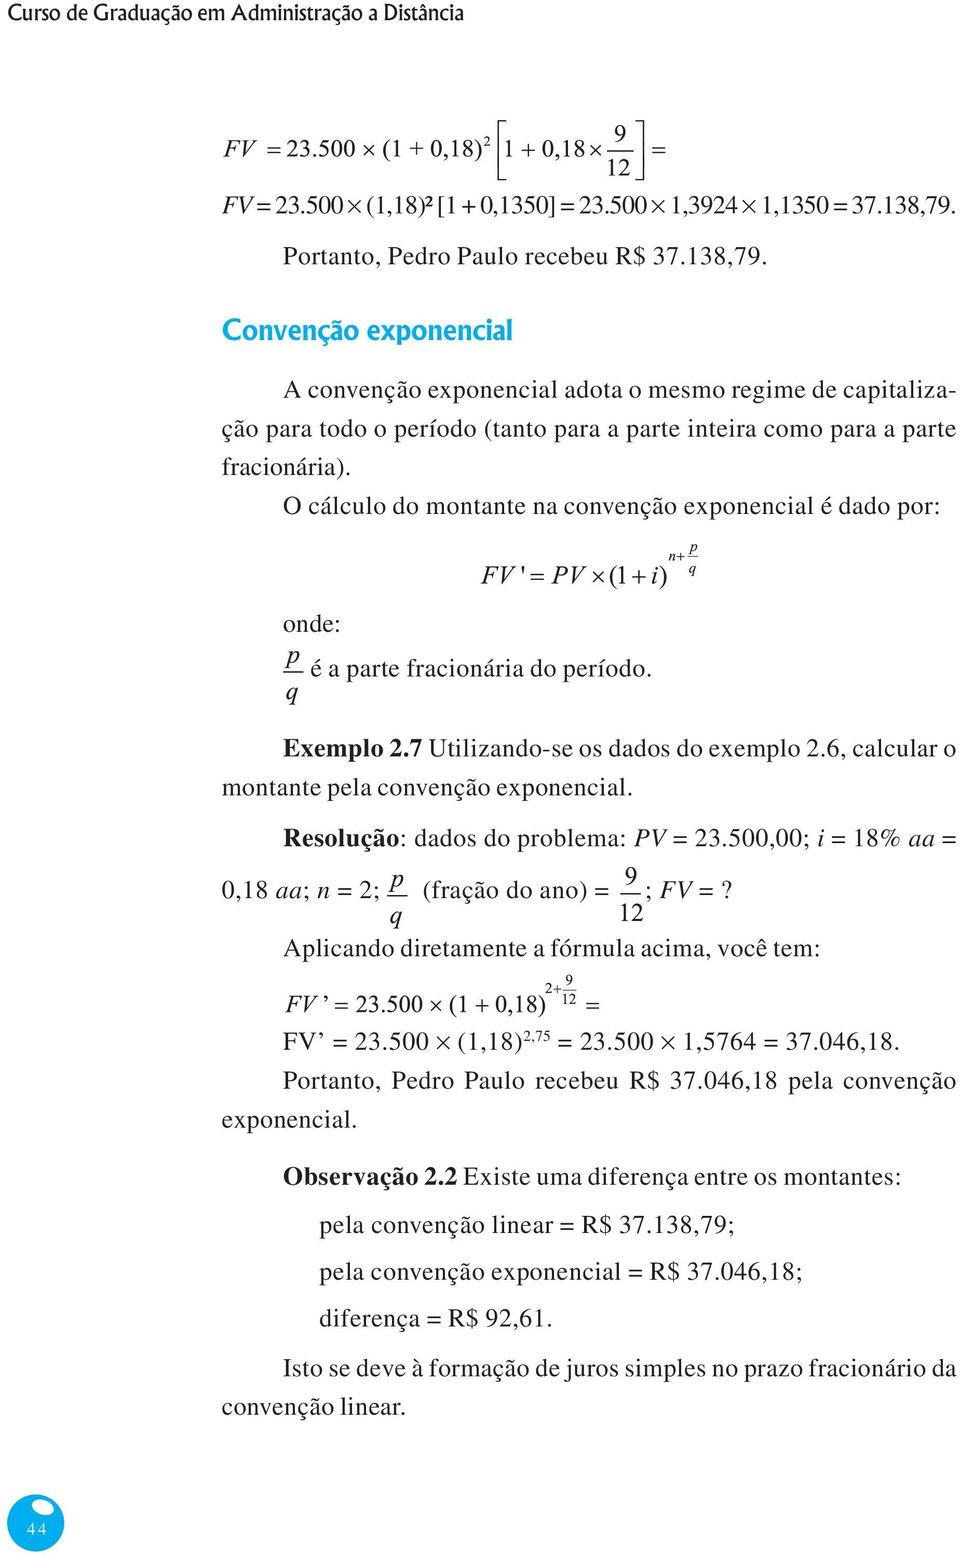 parte fracionária do período Exemplo 27 Utilizando-se os dados do exemplo 26, calcular o montante pela convenção exponencial Resolução: dados do problema: PV = 23500,00; i = 18% aa = 0,18 aa; n = 2;